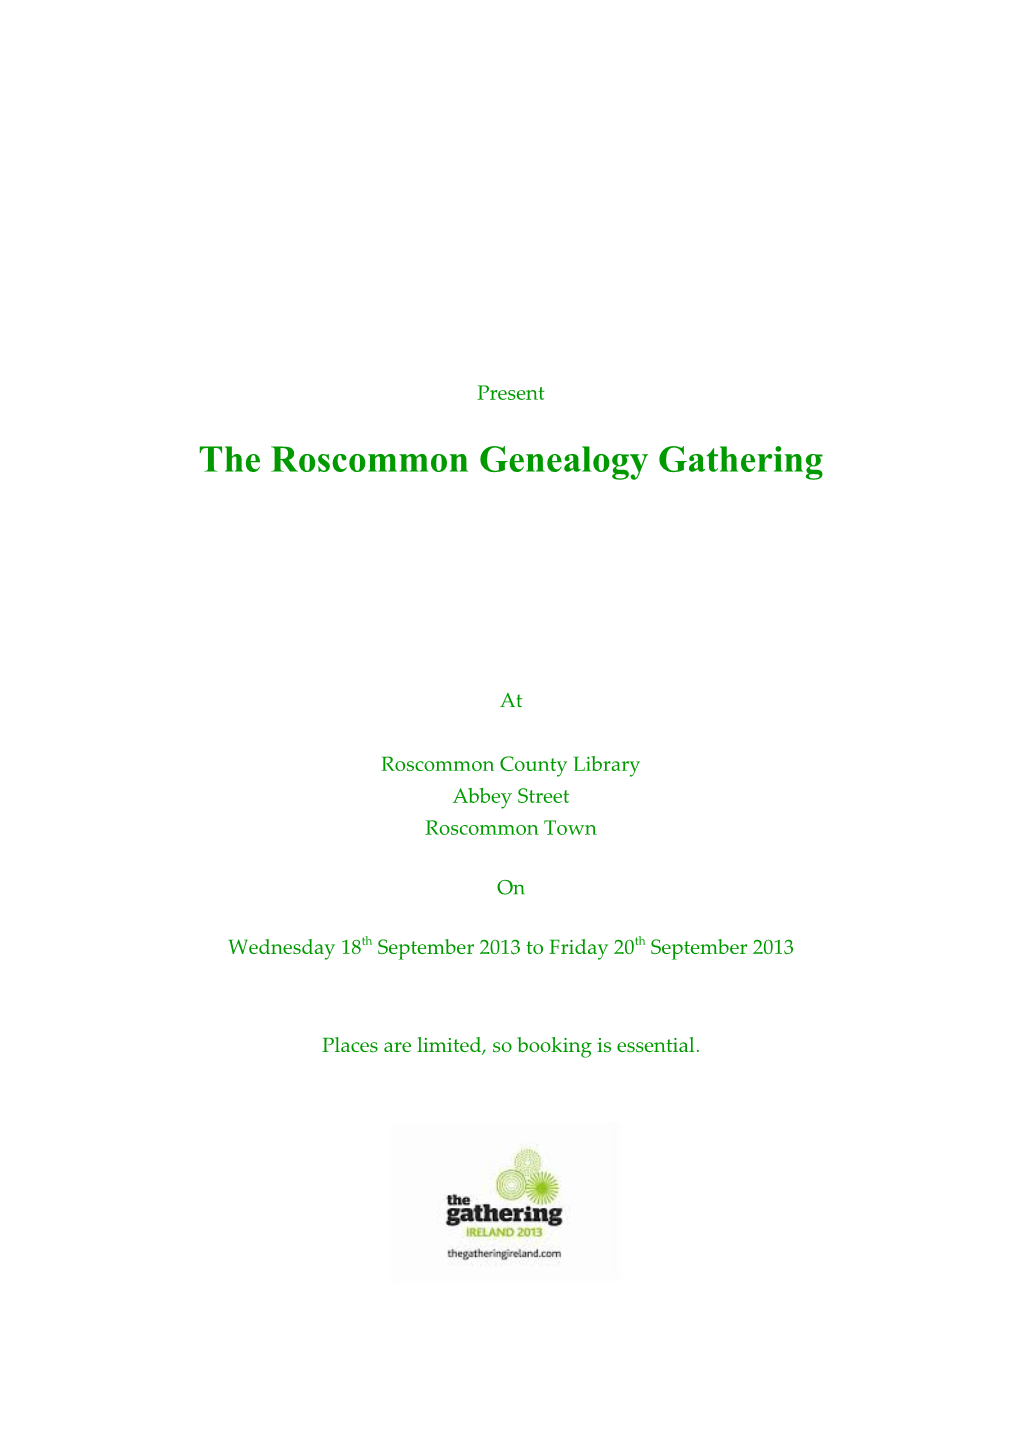 The Roscommon Genealogy Gathering